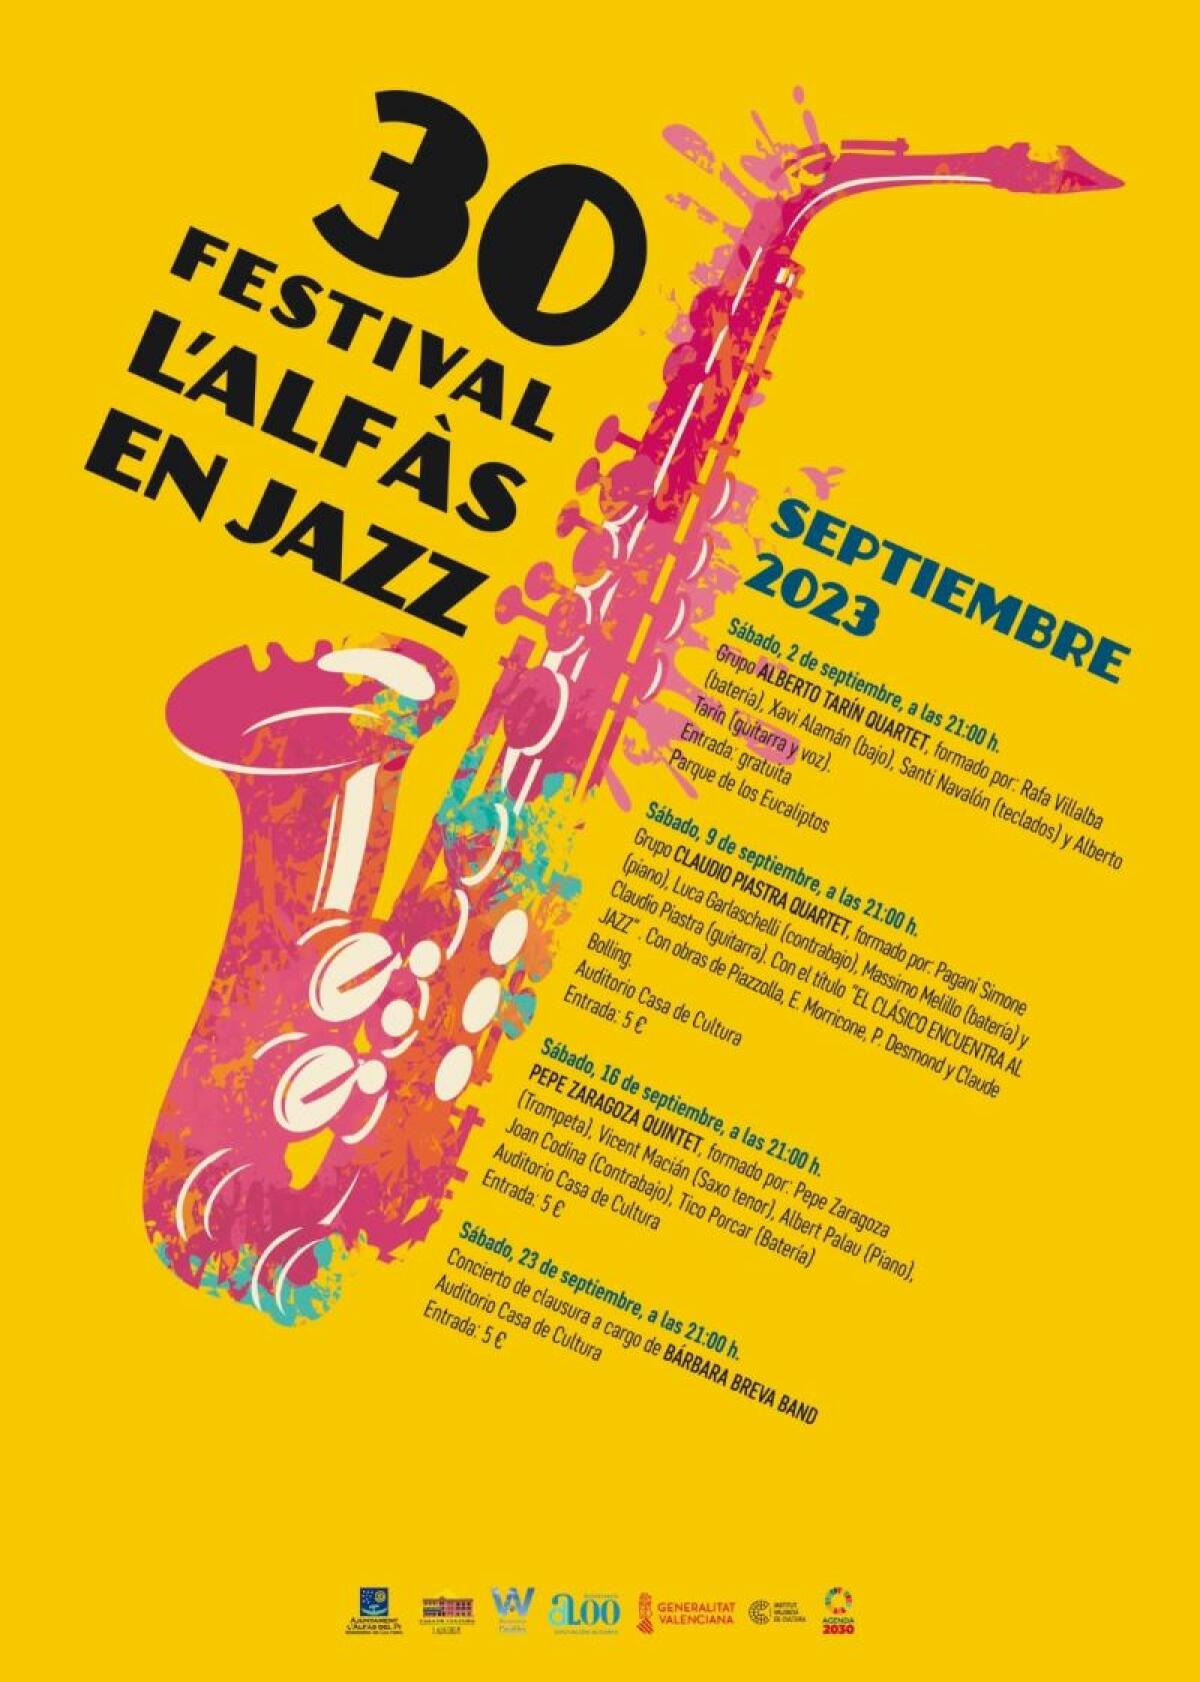 Mañana se inicia el 30 Festival ‘L’Alfàs en Jazz’ con el concierto gratuito de Alberto Tarin Quartet